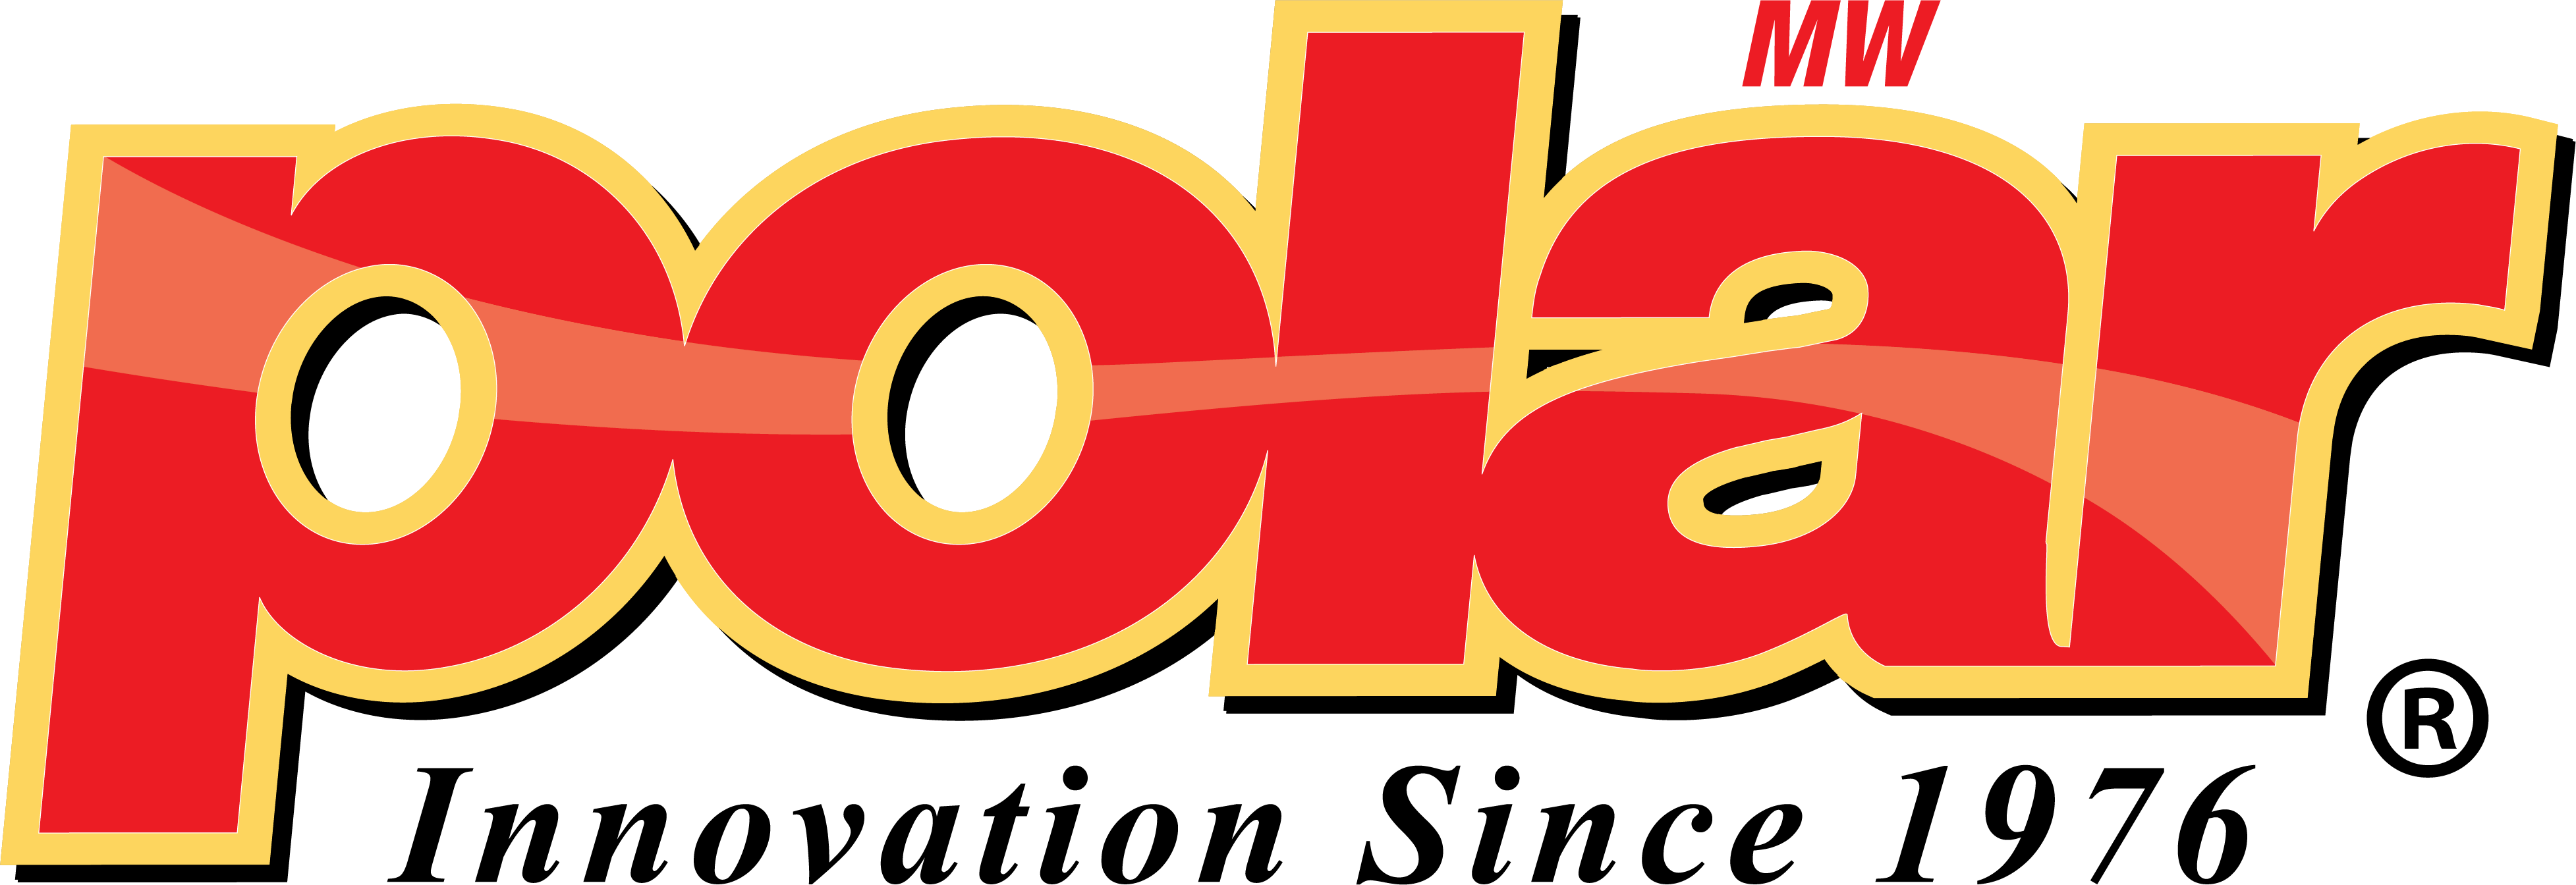 Logo Innovation - Mw Polar Foods Logo (3910x1344)